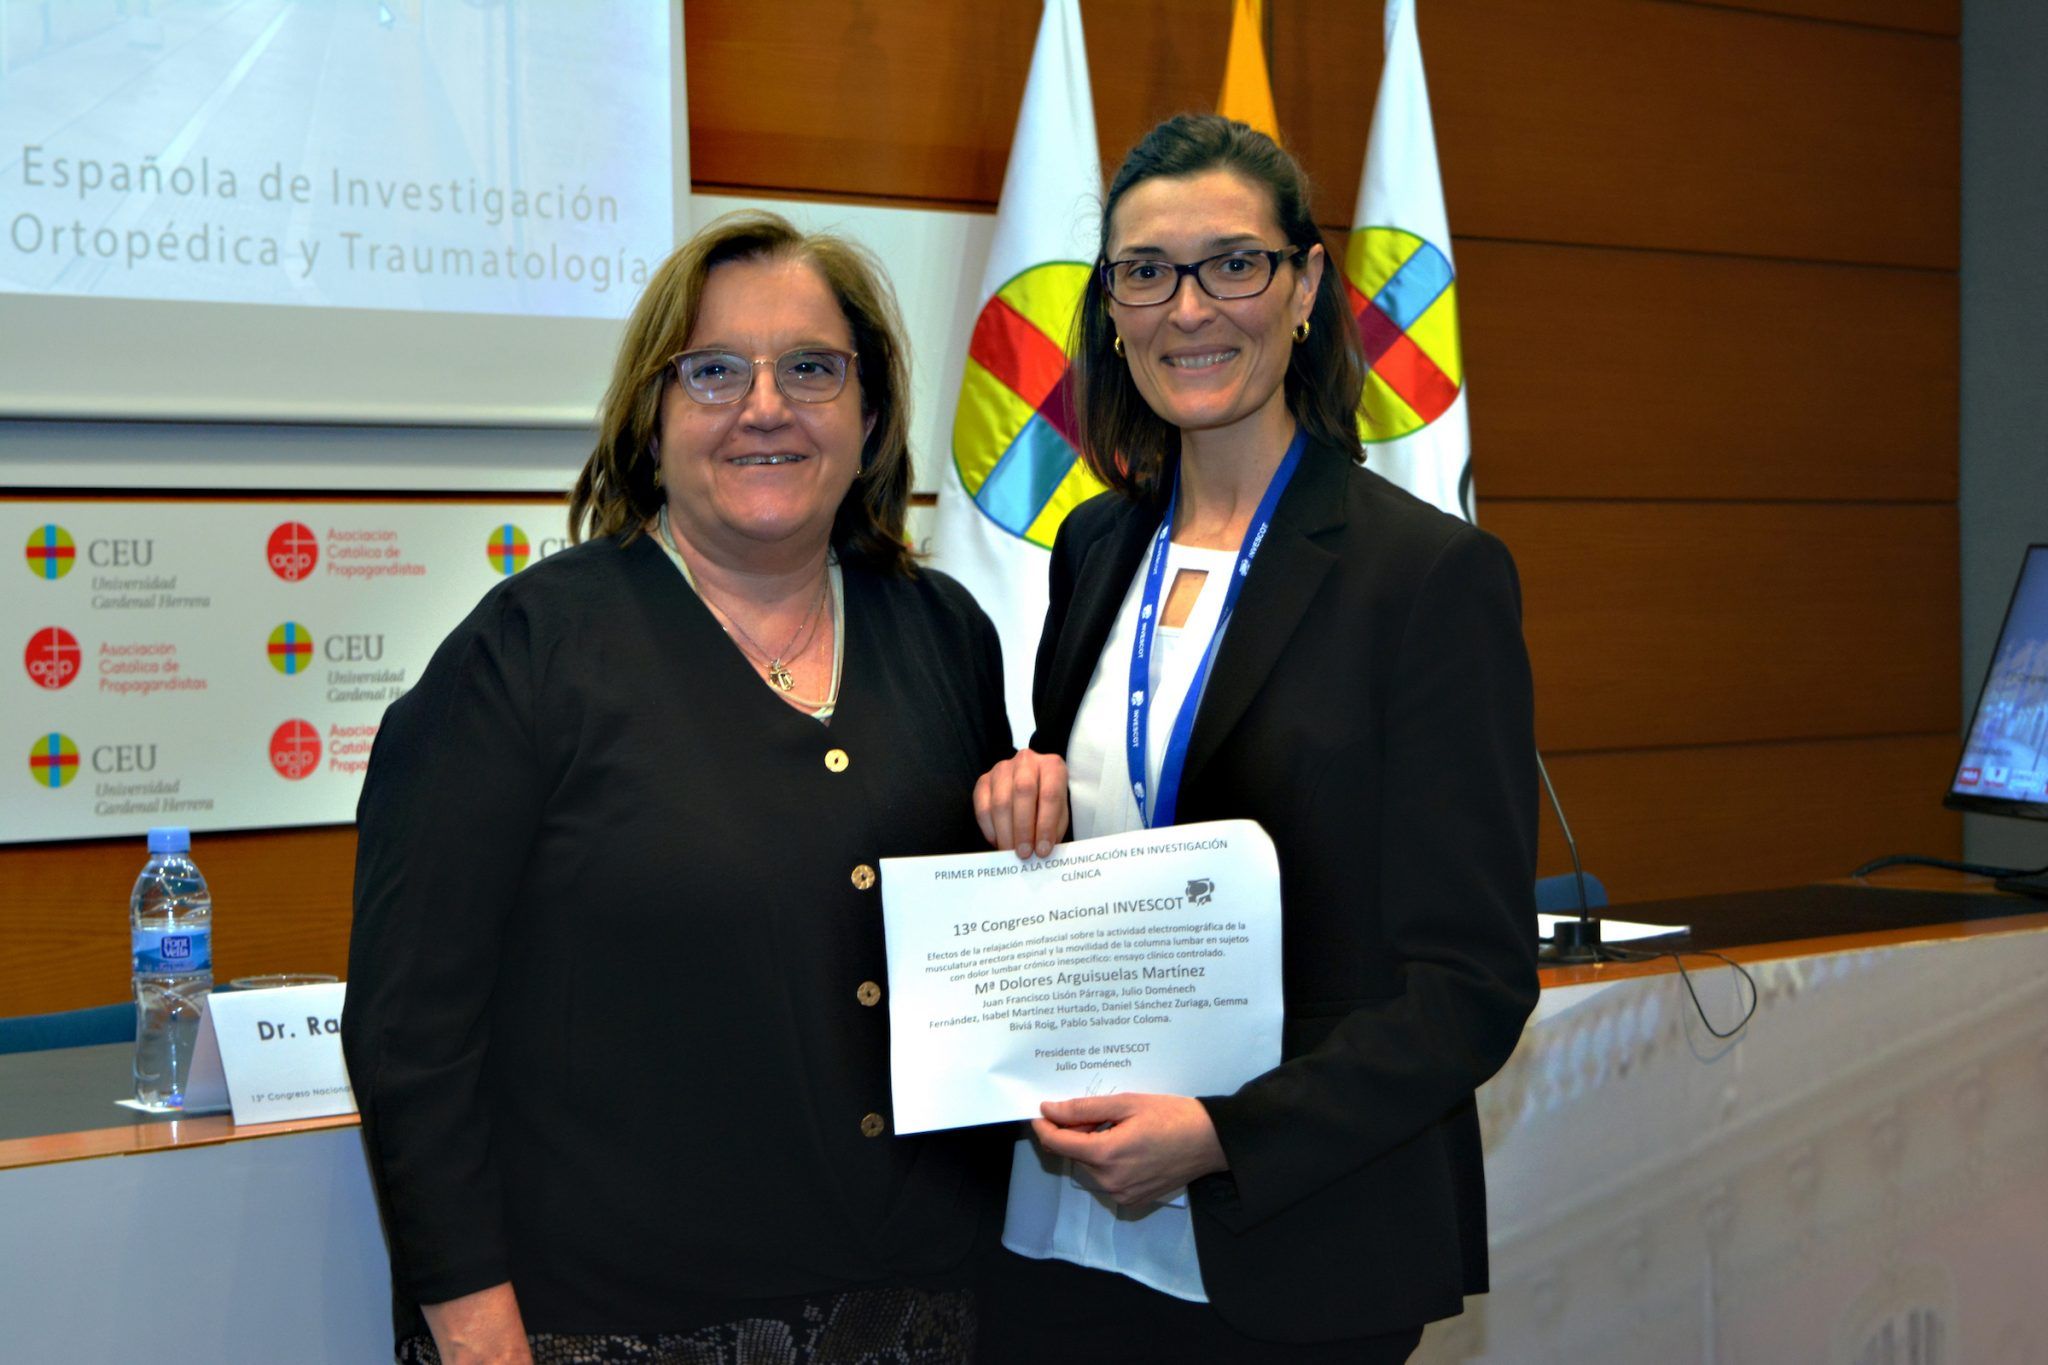 ¿El último Congreso? Dolores Arguisuelas, profesora de Fisiuoterapia CEU-UCH, recibe el primer premio del 13º Congreso INVESCOT